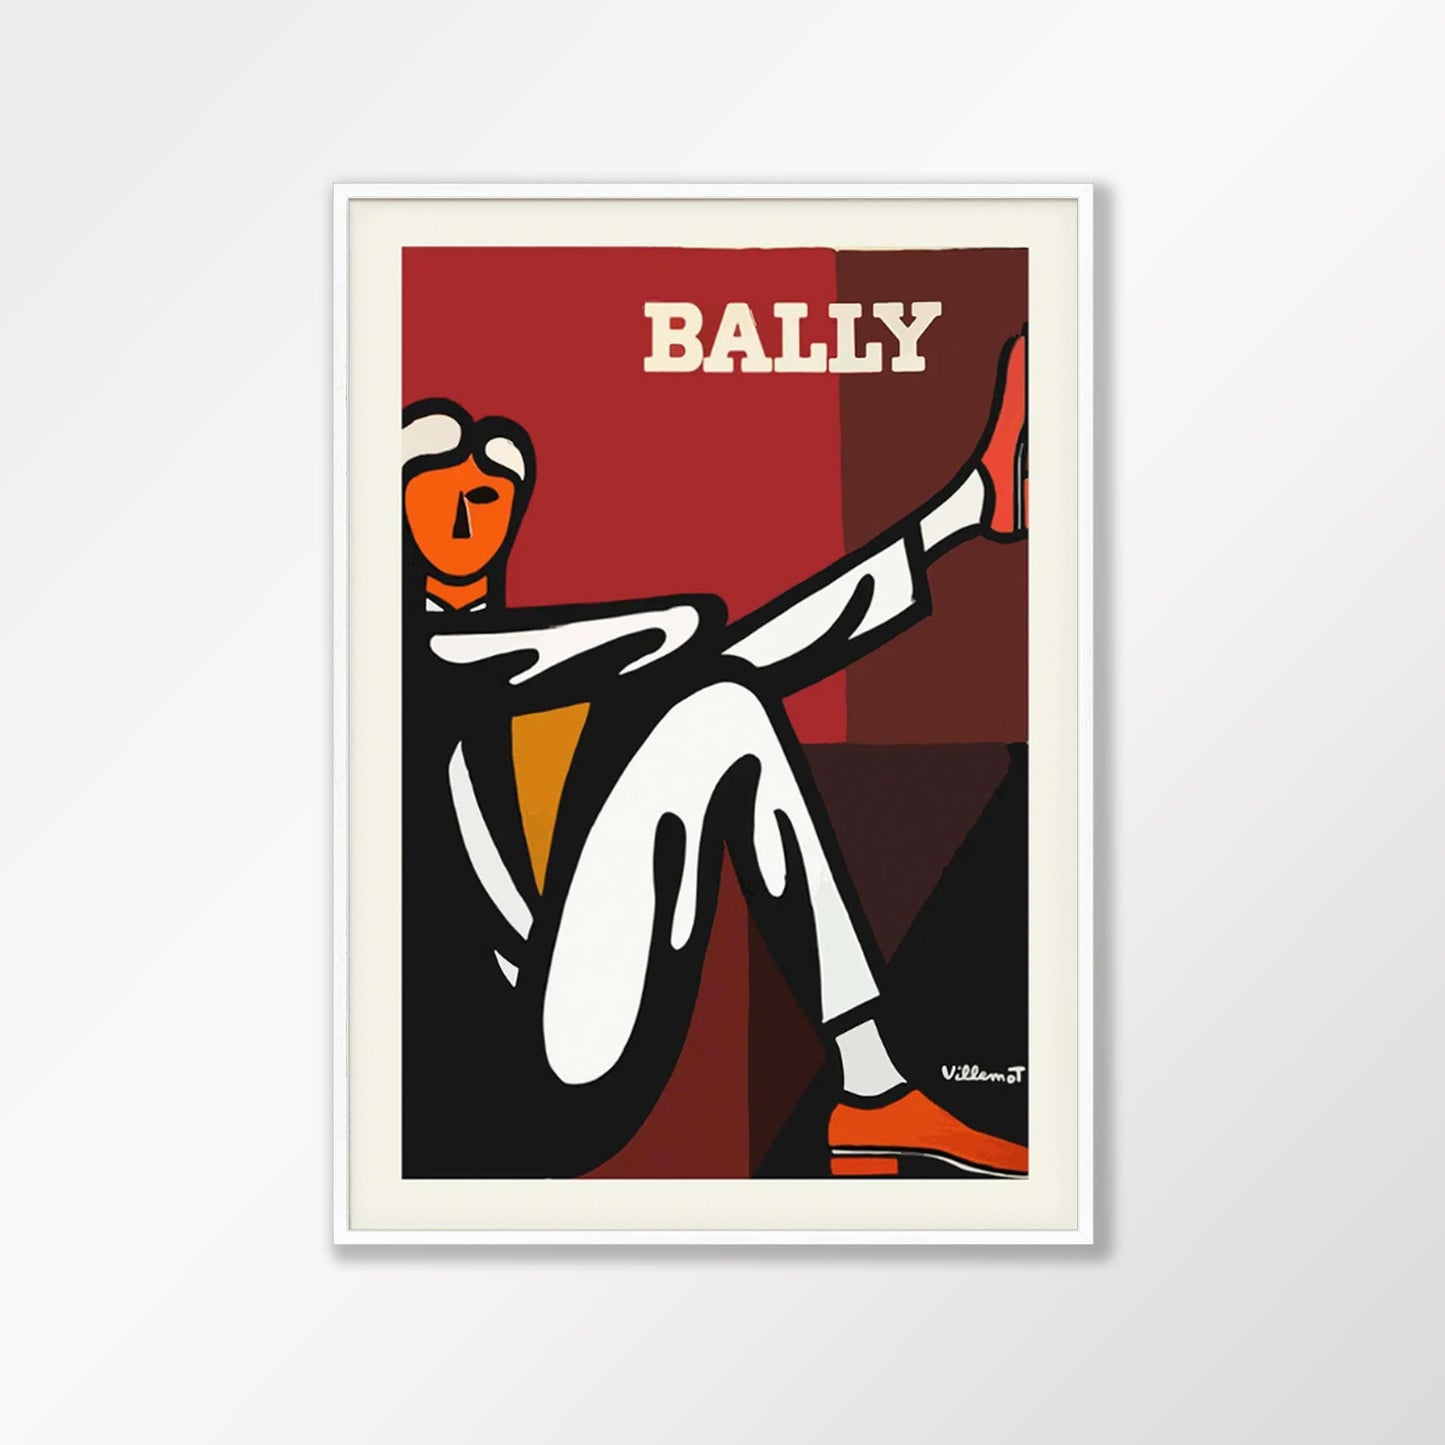 Bally Red and Brown Man Poster by Bernard Villemot